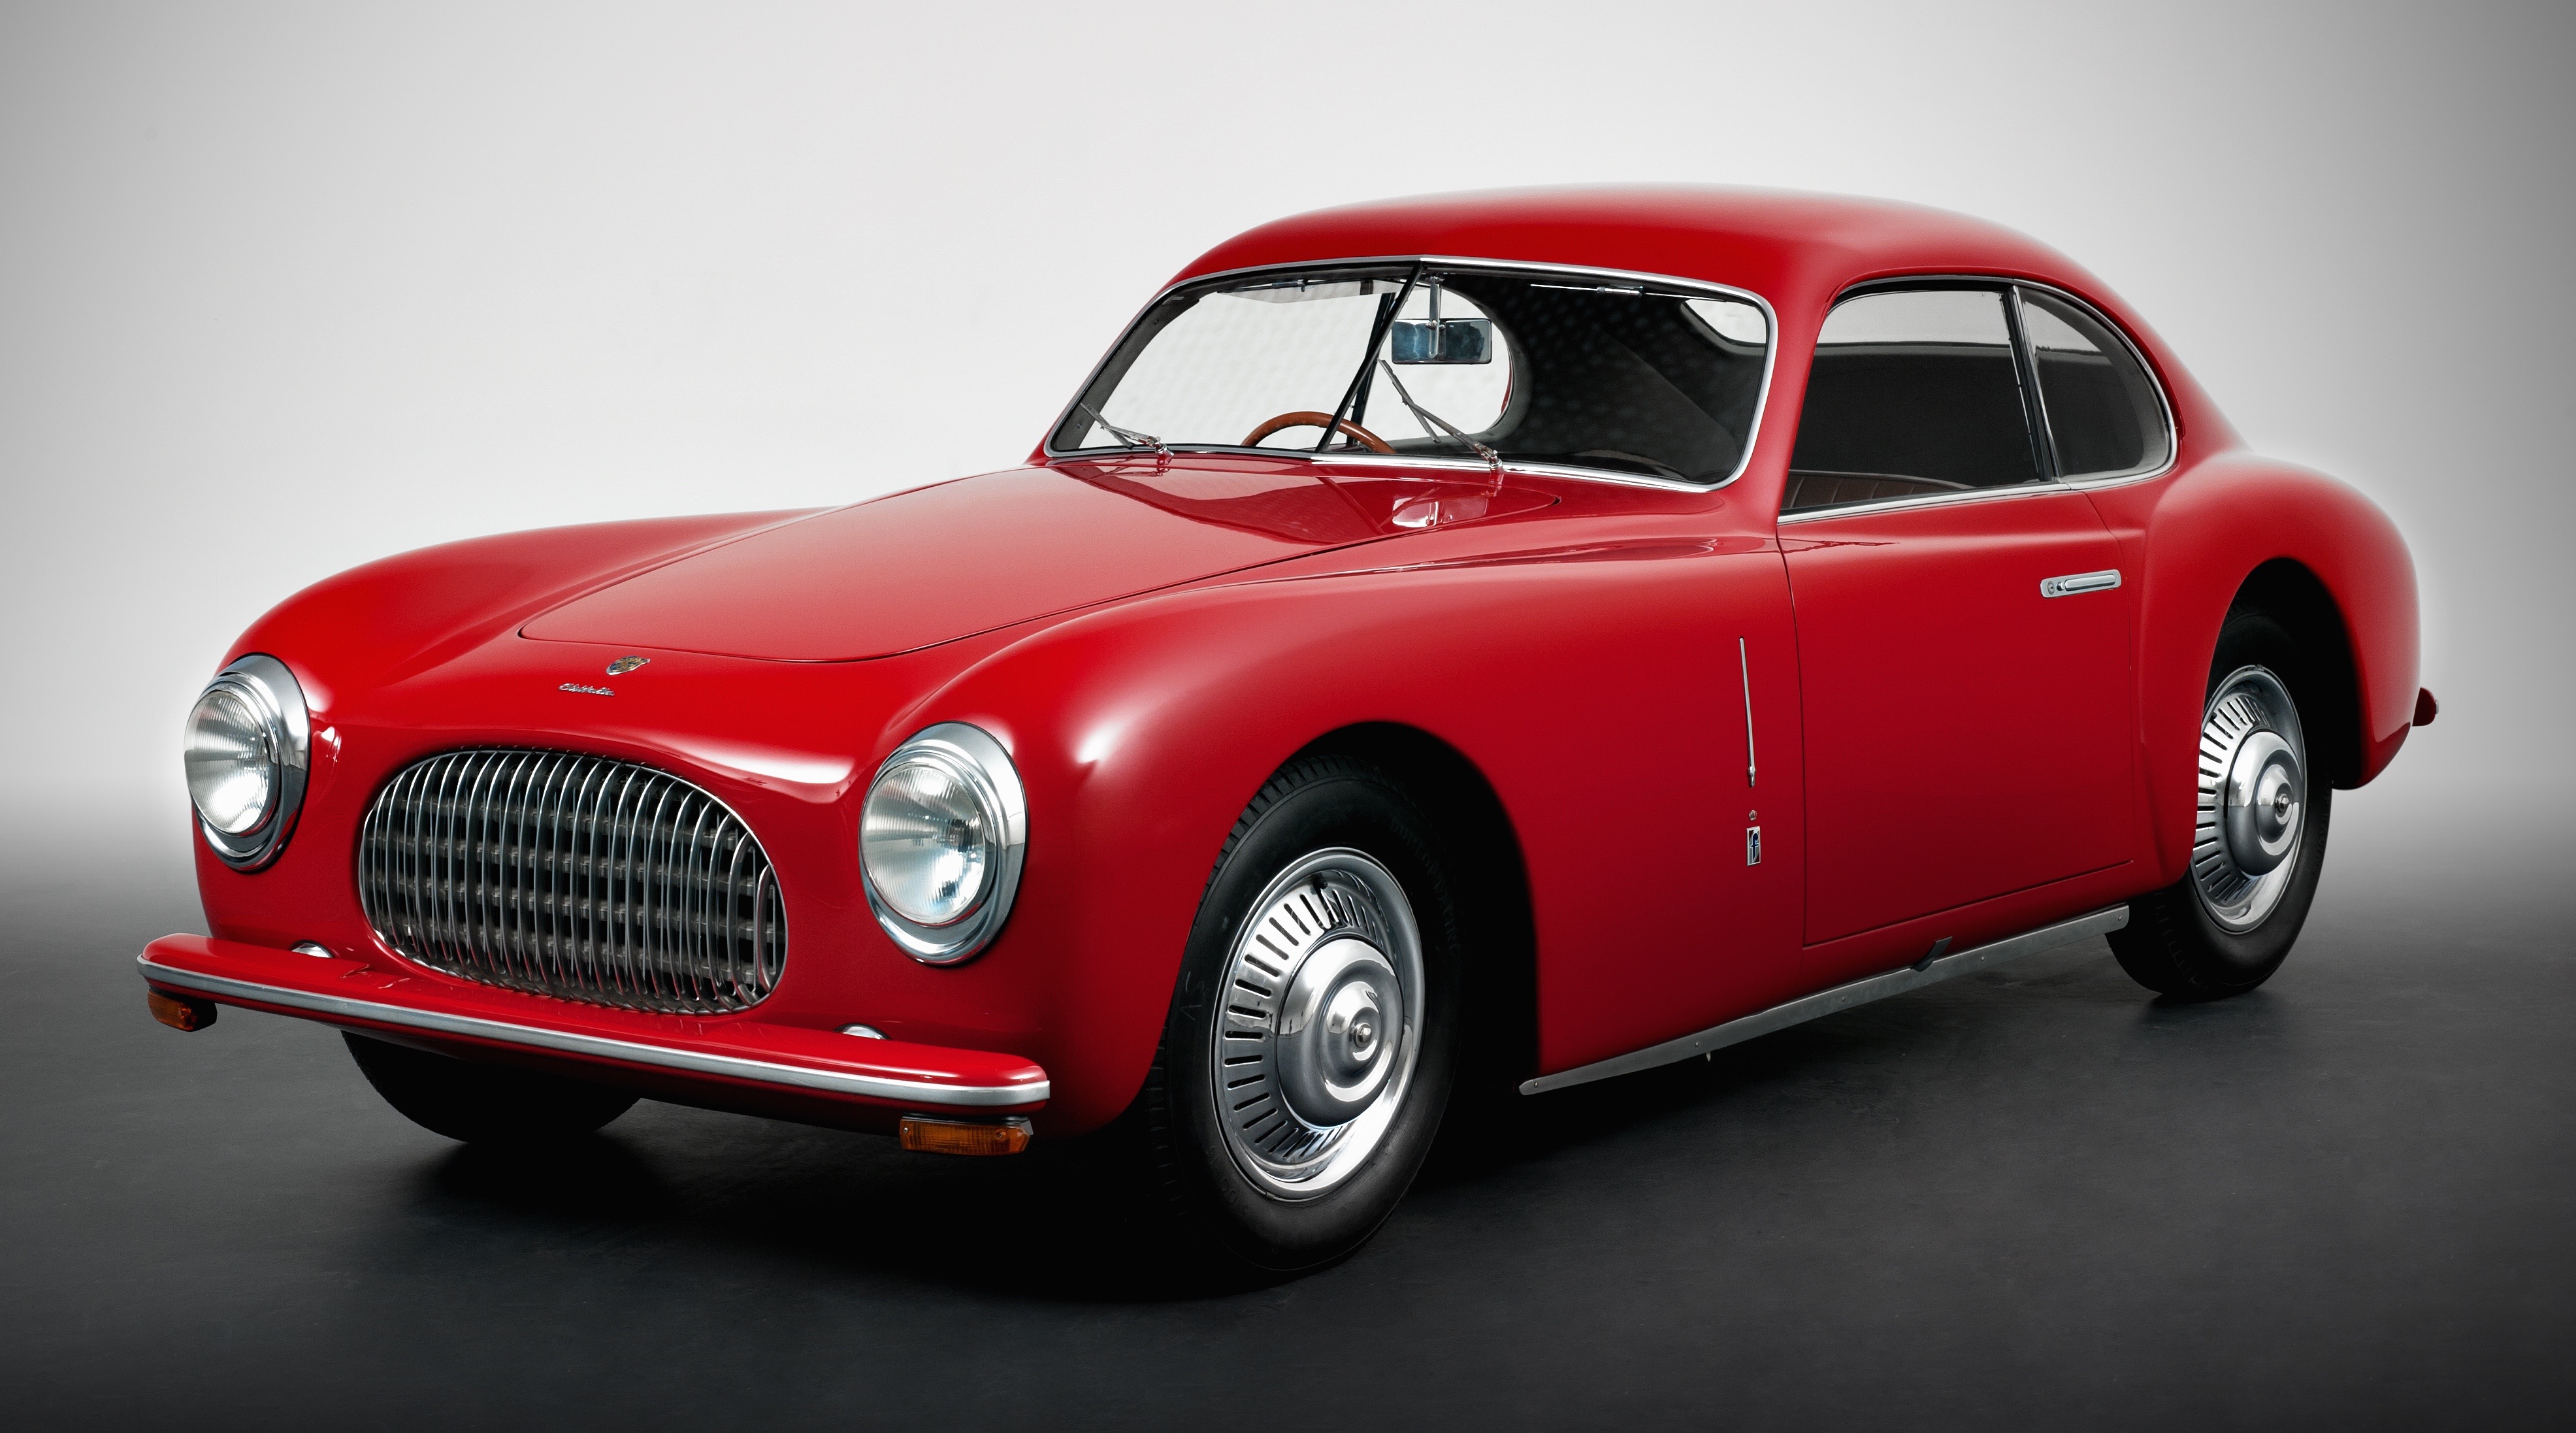 Cisitalia was a breakthrough design by Pinin Farina in late 1940s | Pininfarina photos